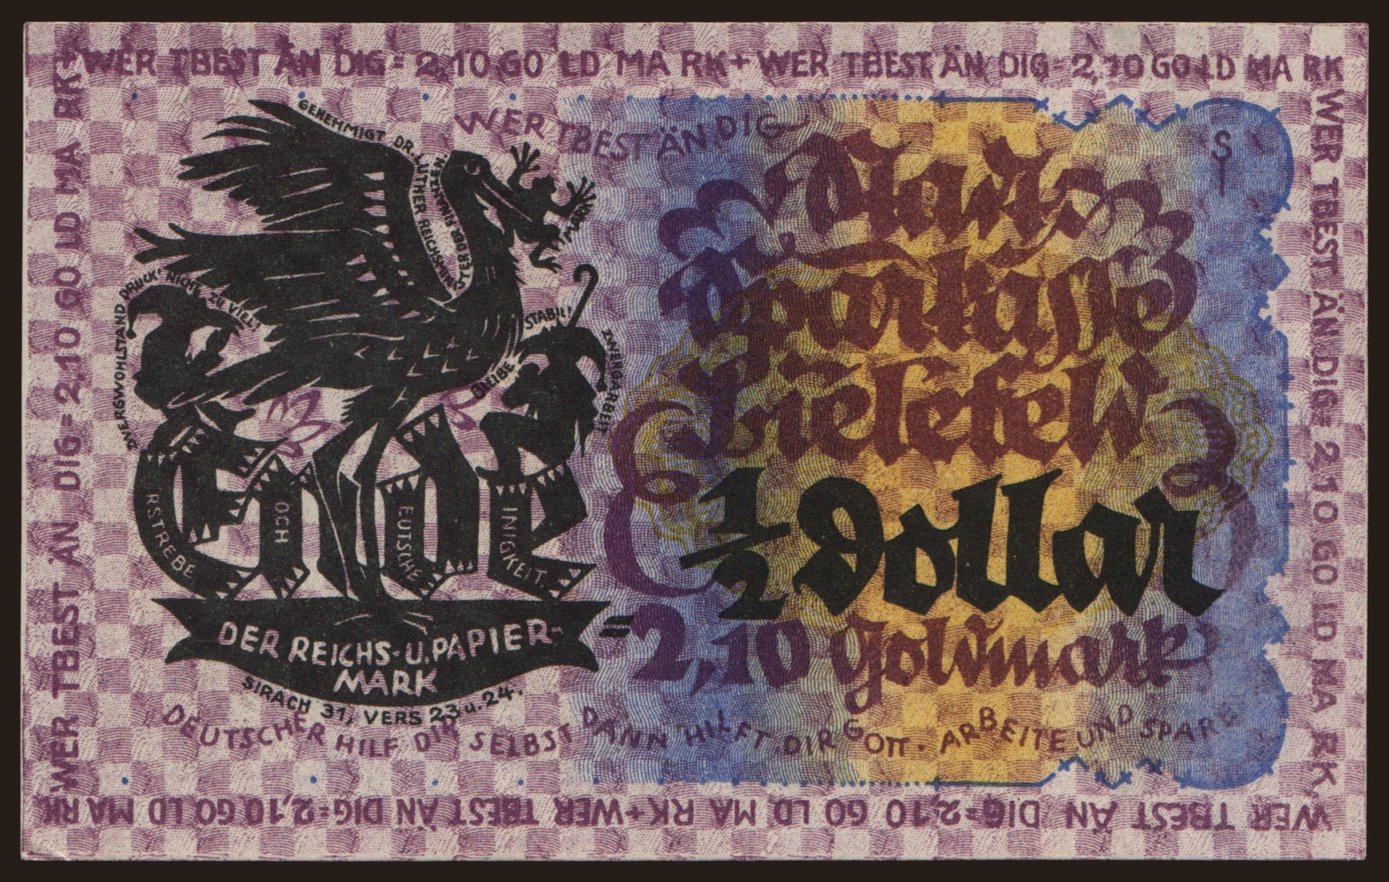 Bielefeld, 2.10 Goldmark, 1923